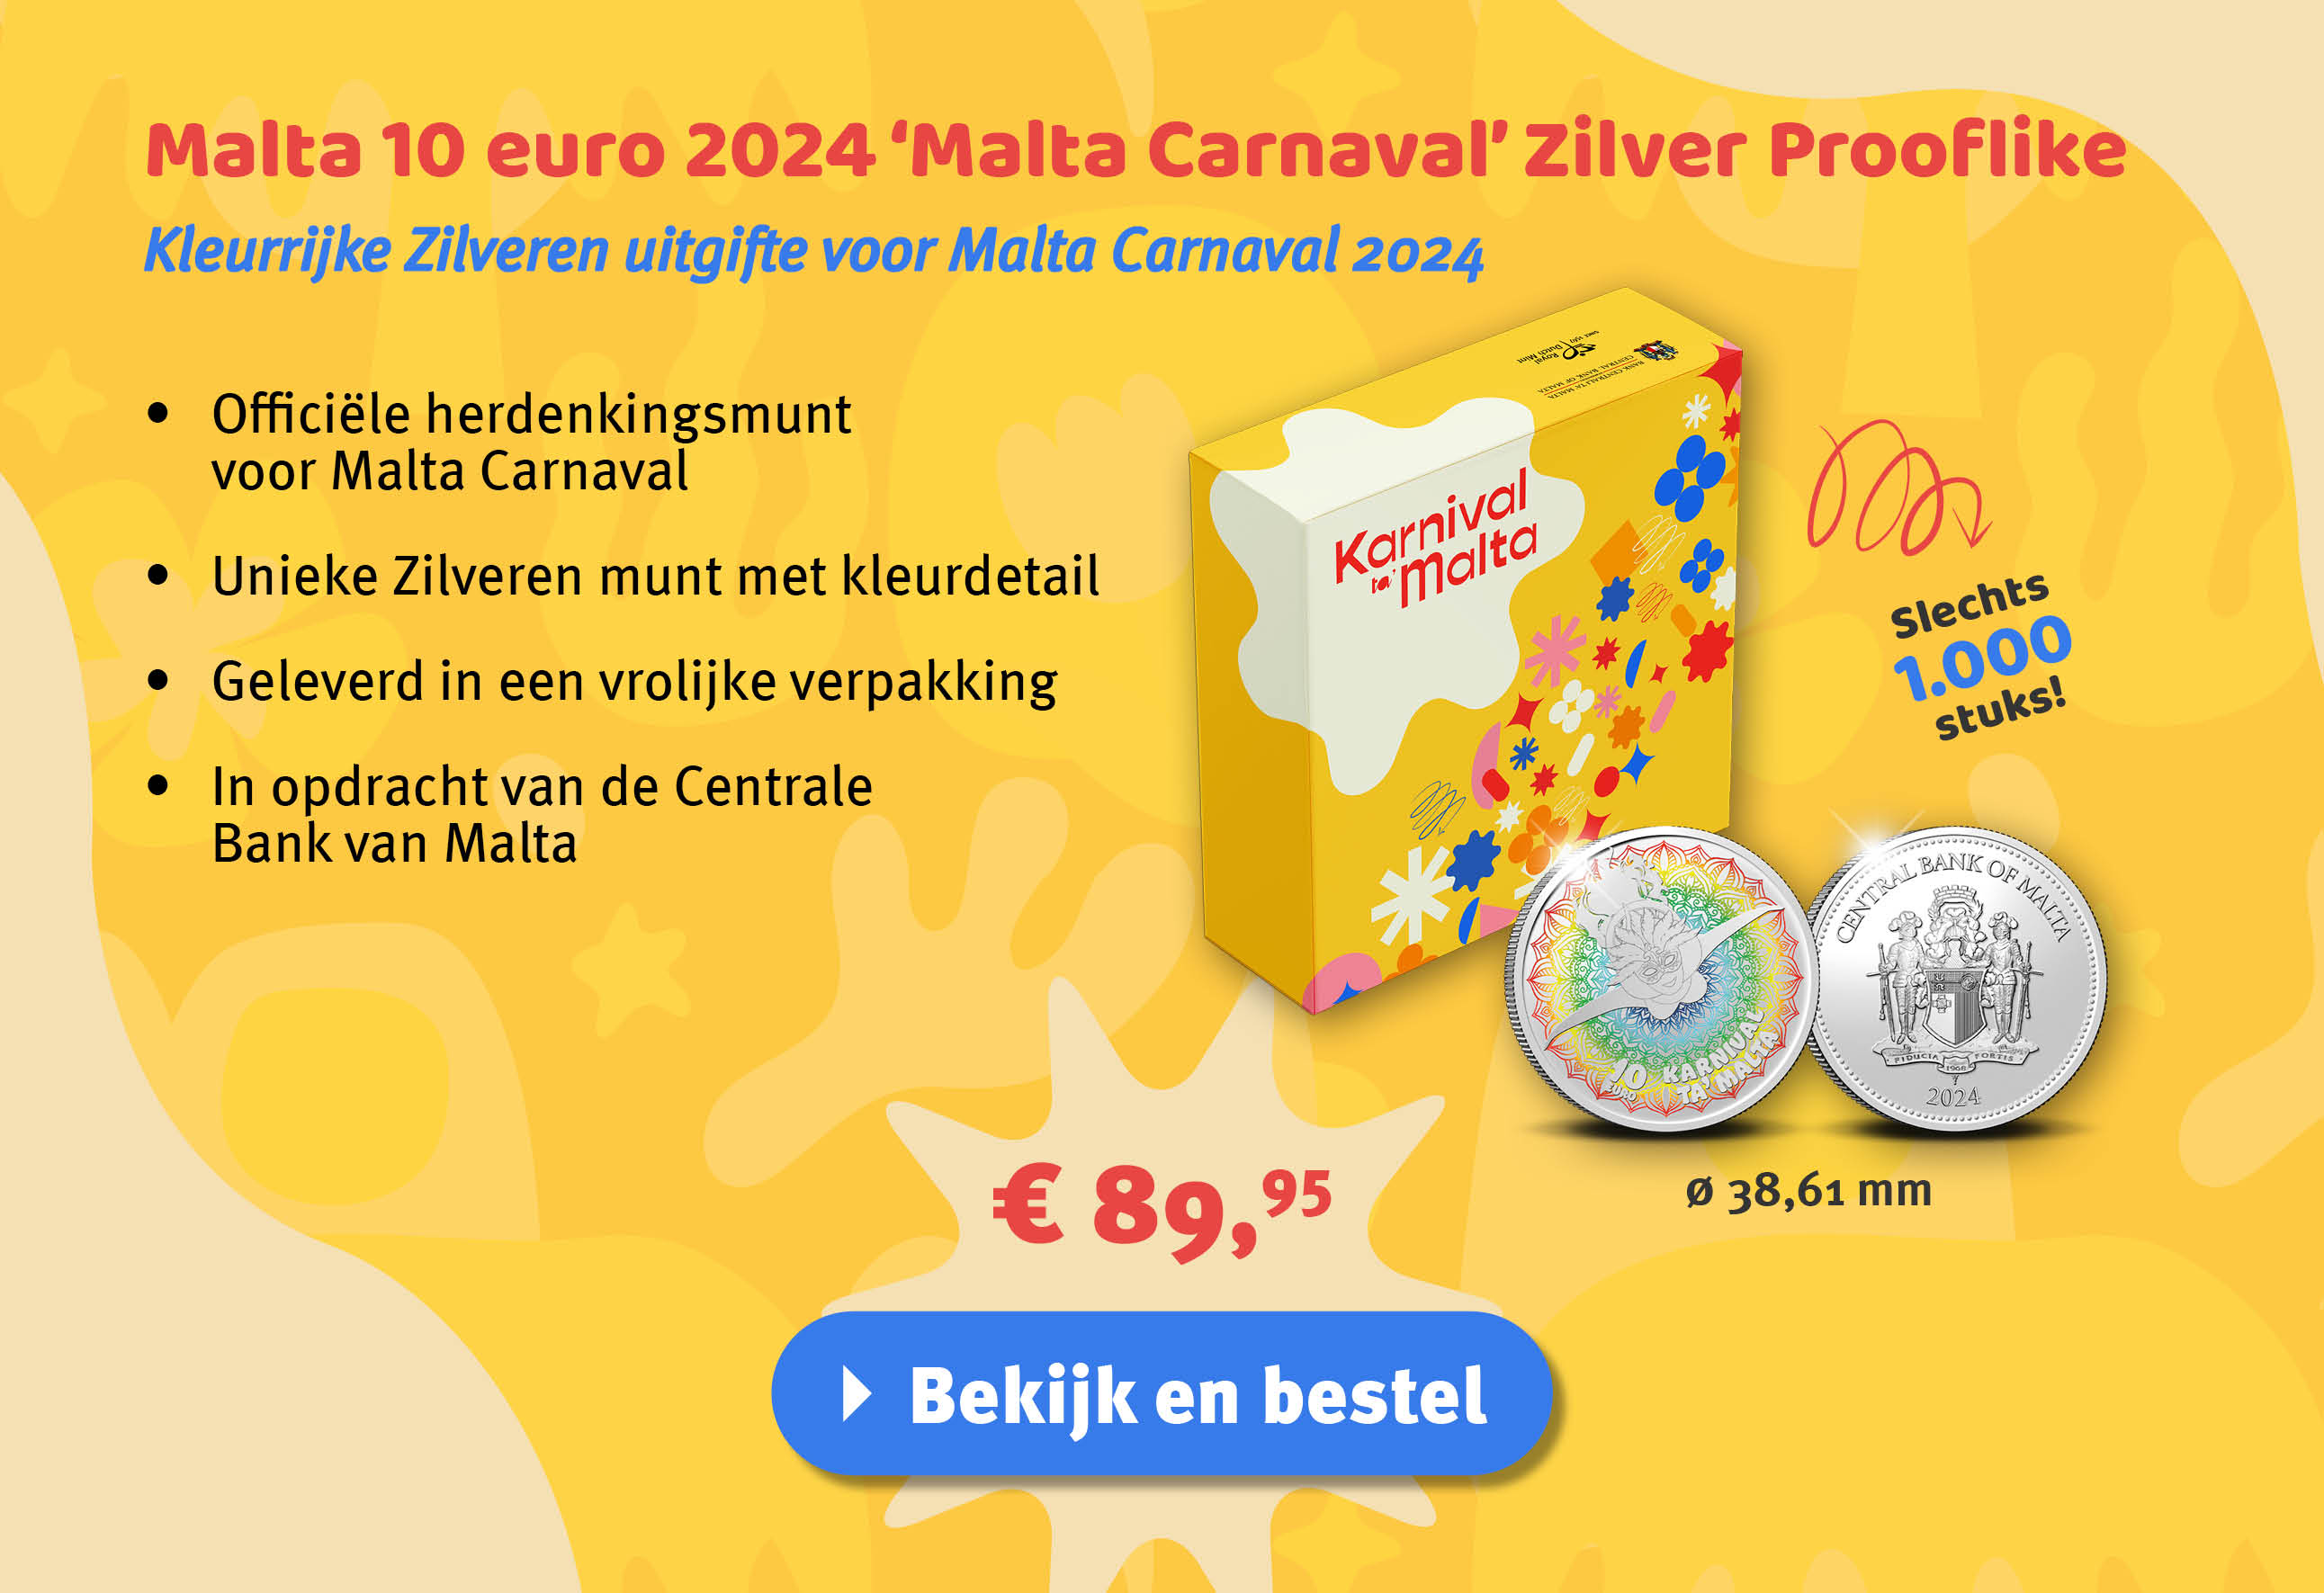 Bekijk en bestel: Malta 10 euro 2024 ‘Malta Carnaval’ zilver prooflike